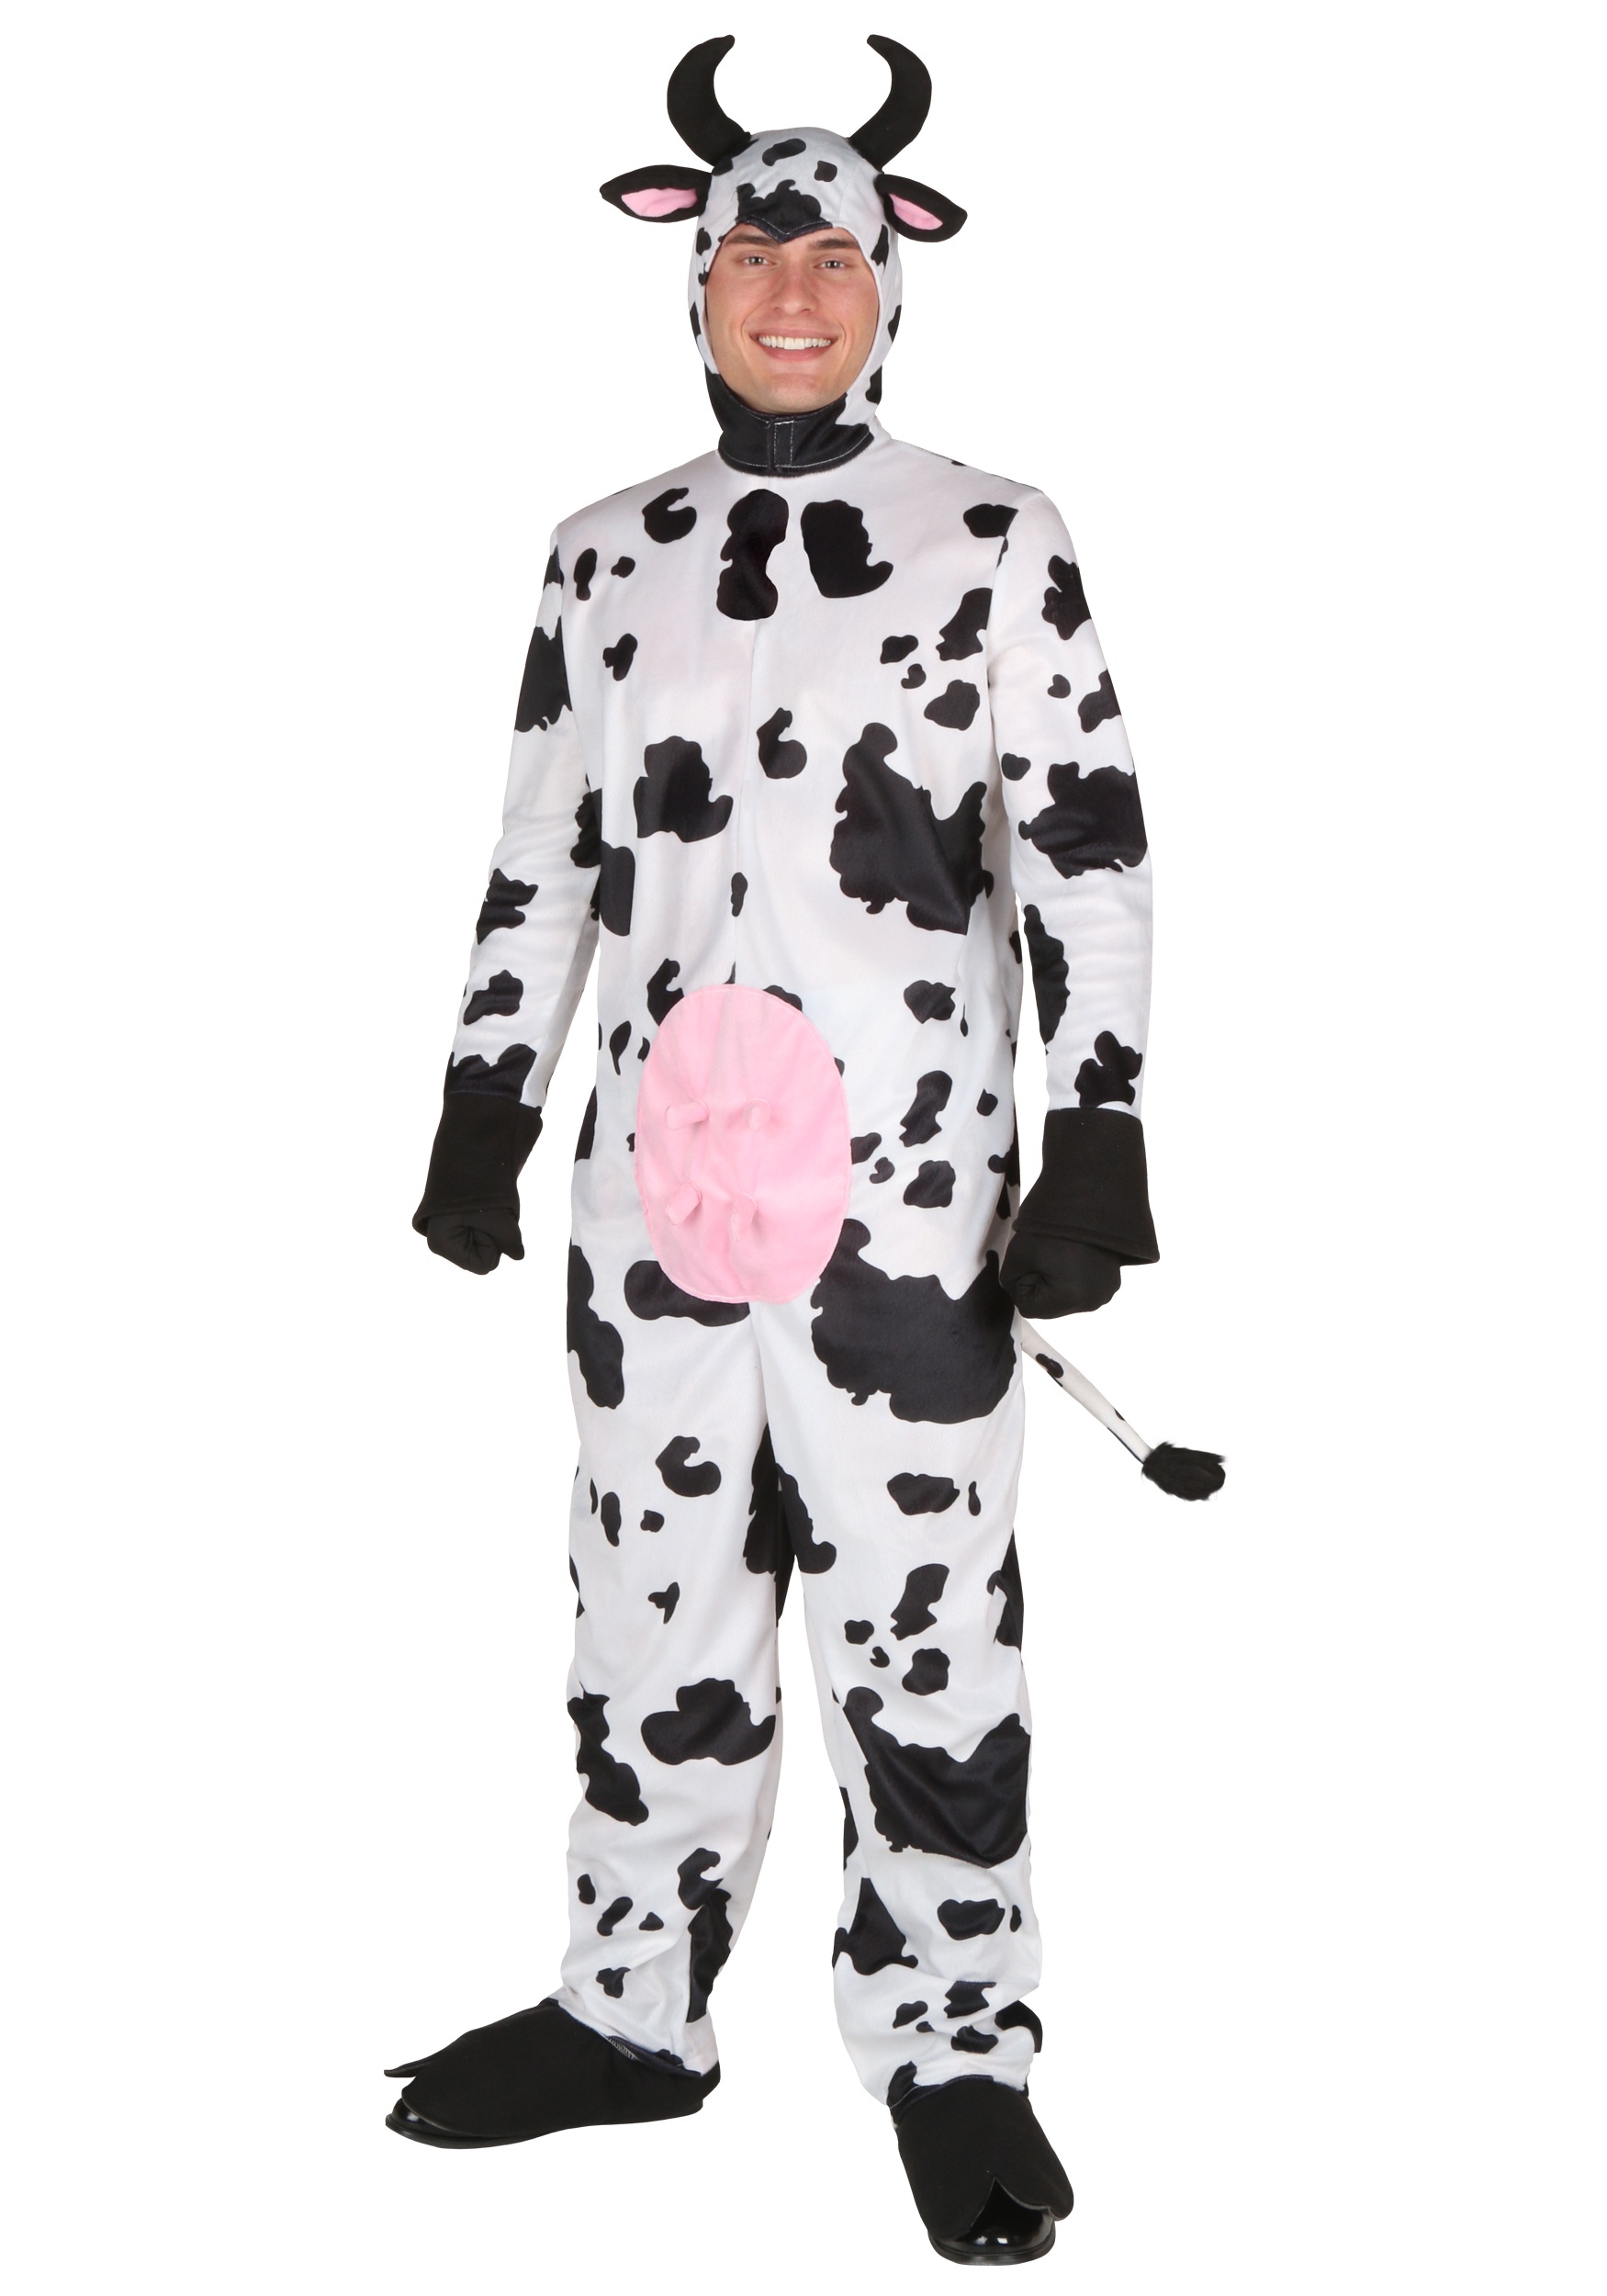 Plus Cow Costume